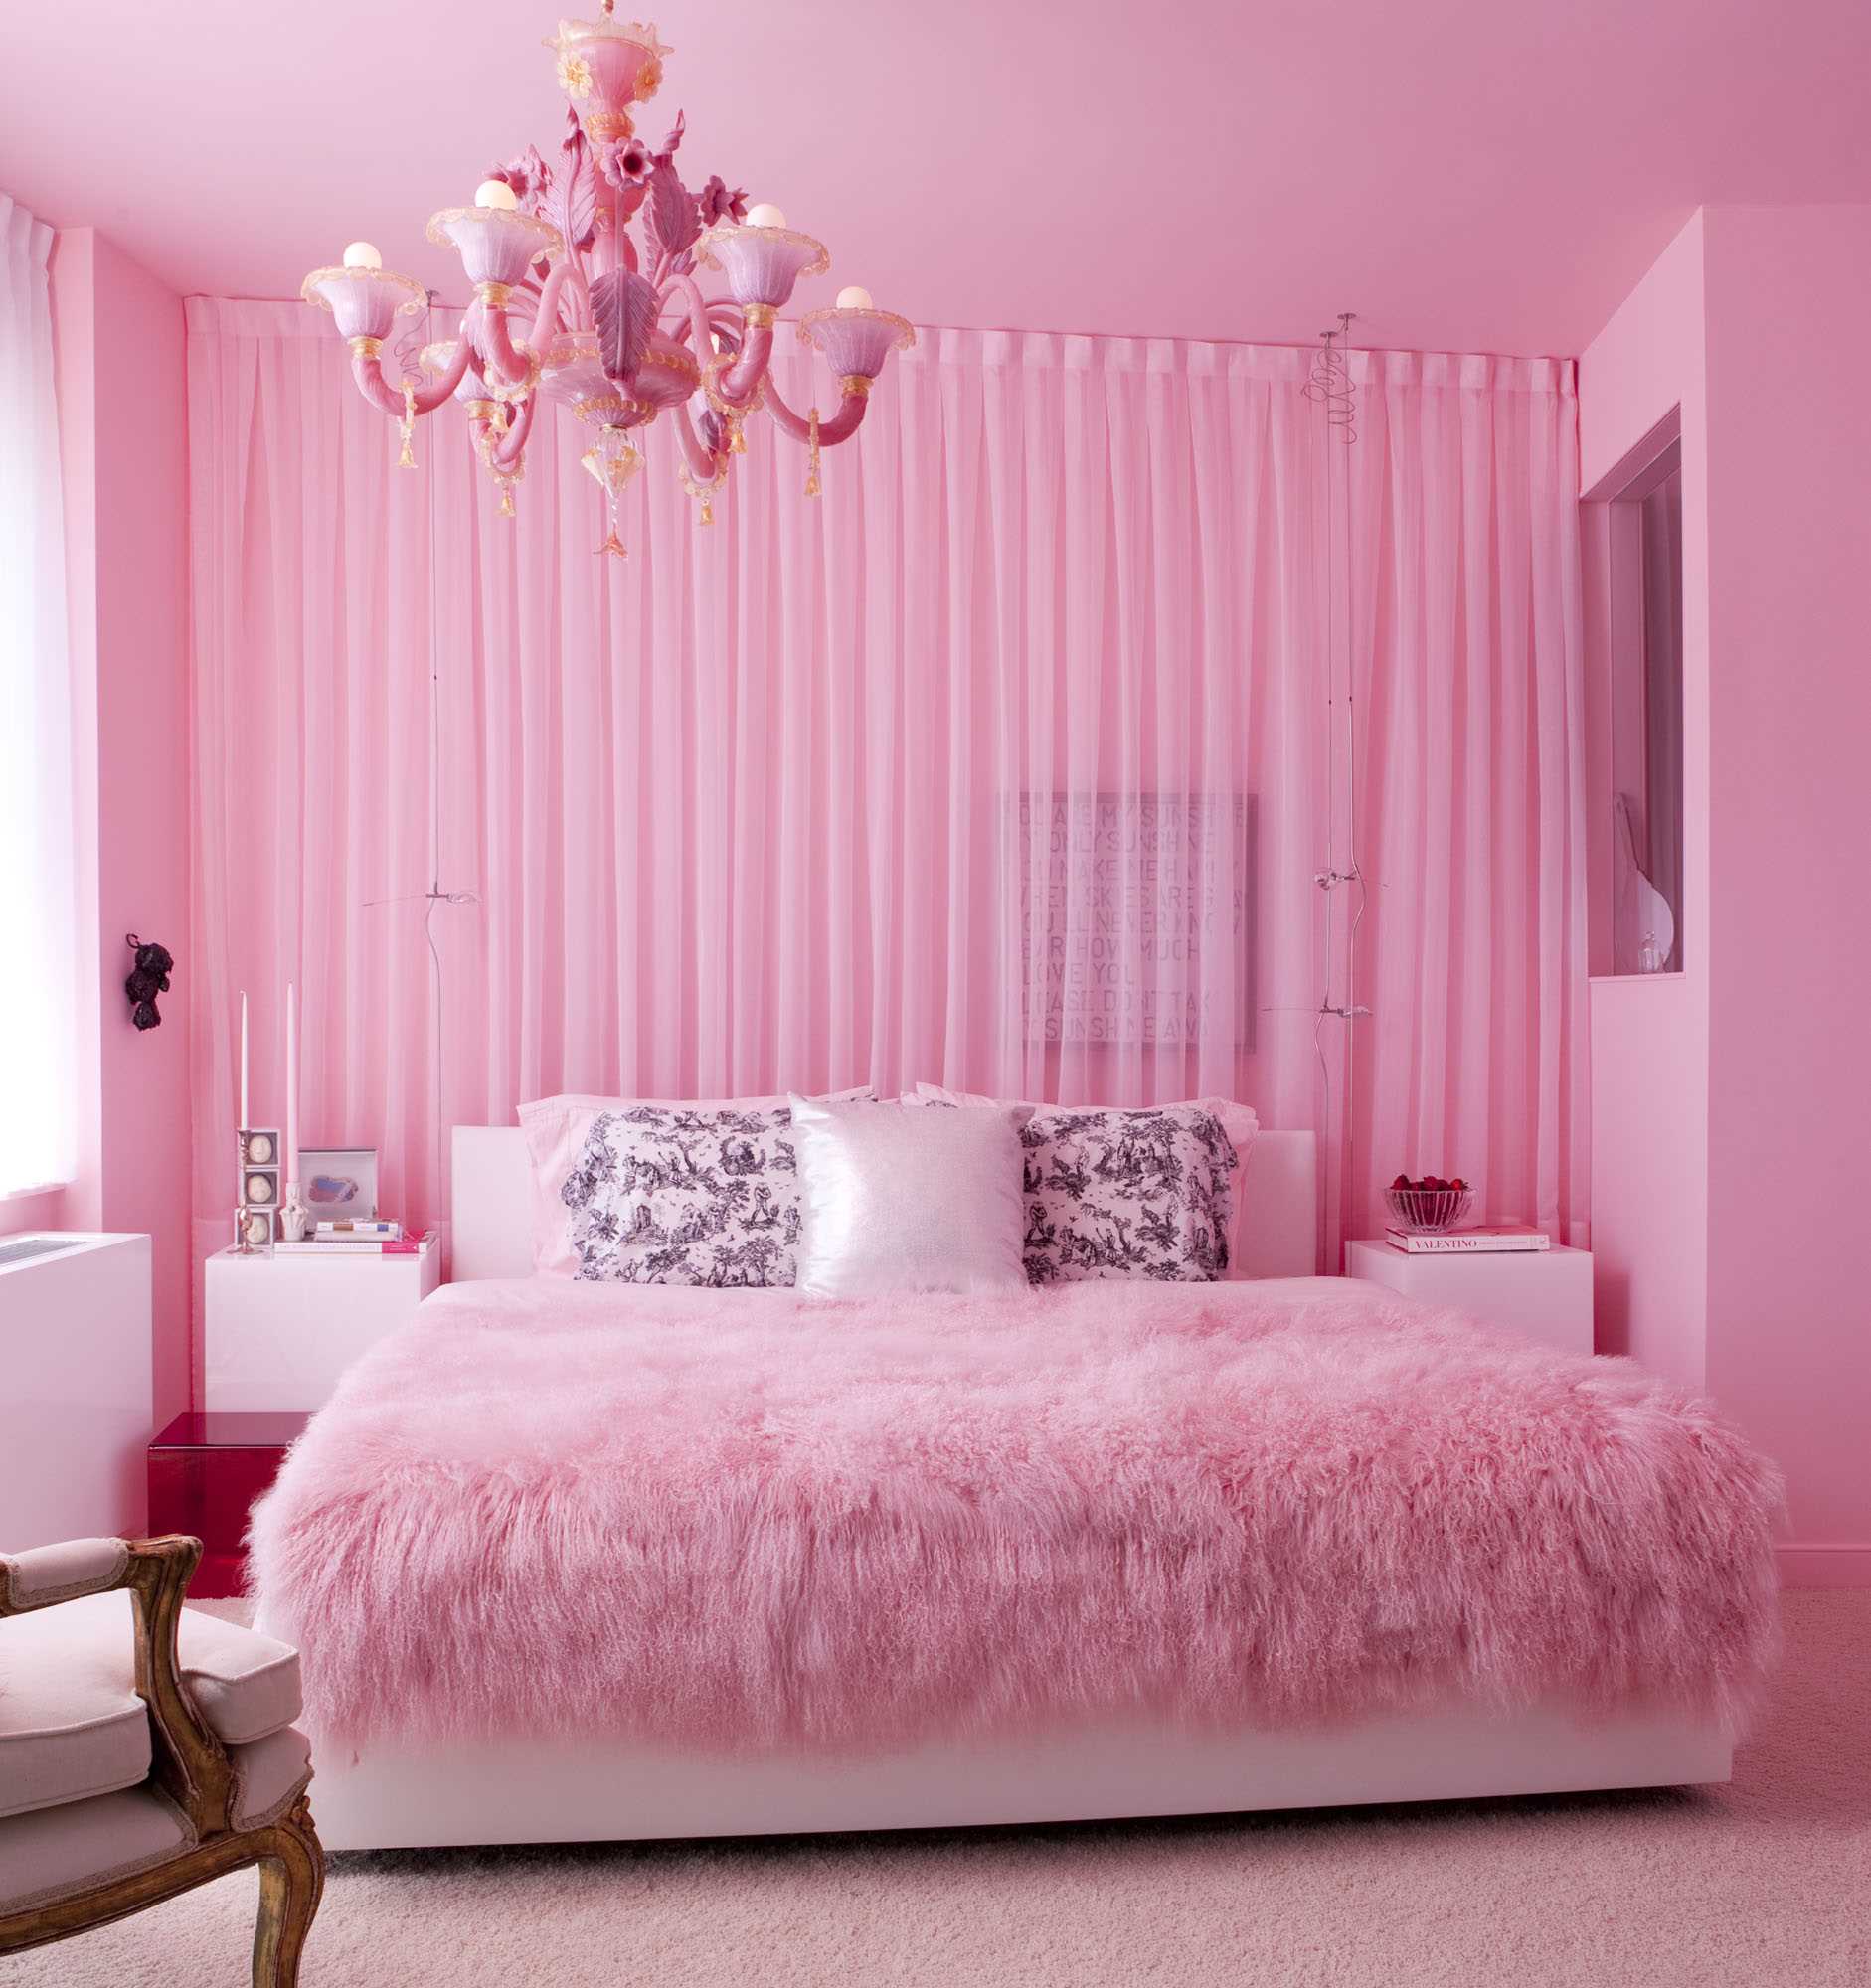 فكرة استخدام الوردي في ديكور غرفة غير عادية